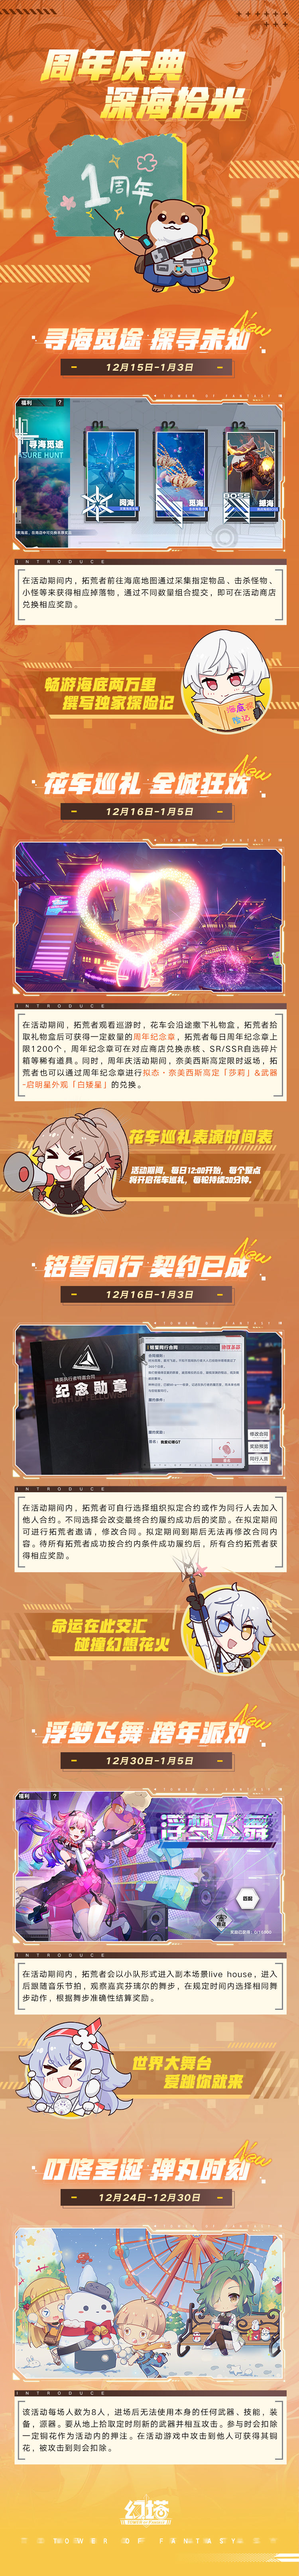 《幻塔》2.4版本「绮海逐行」将于12月15日上线